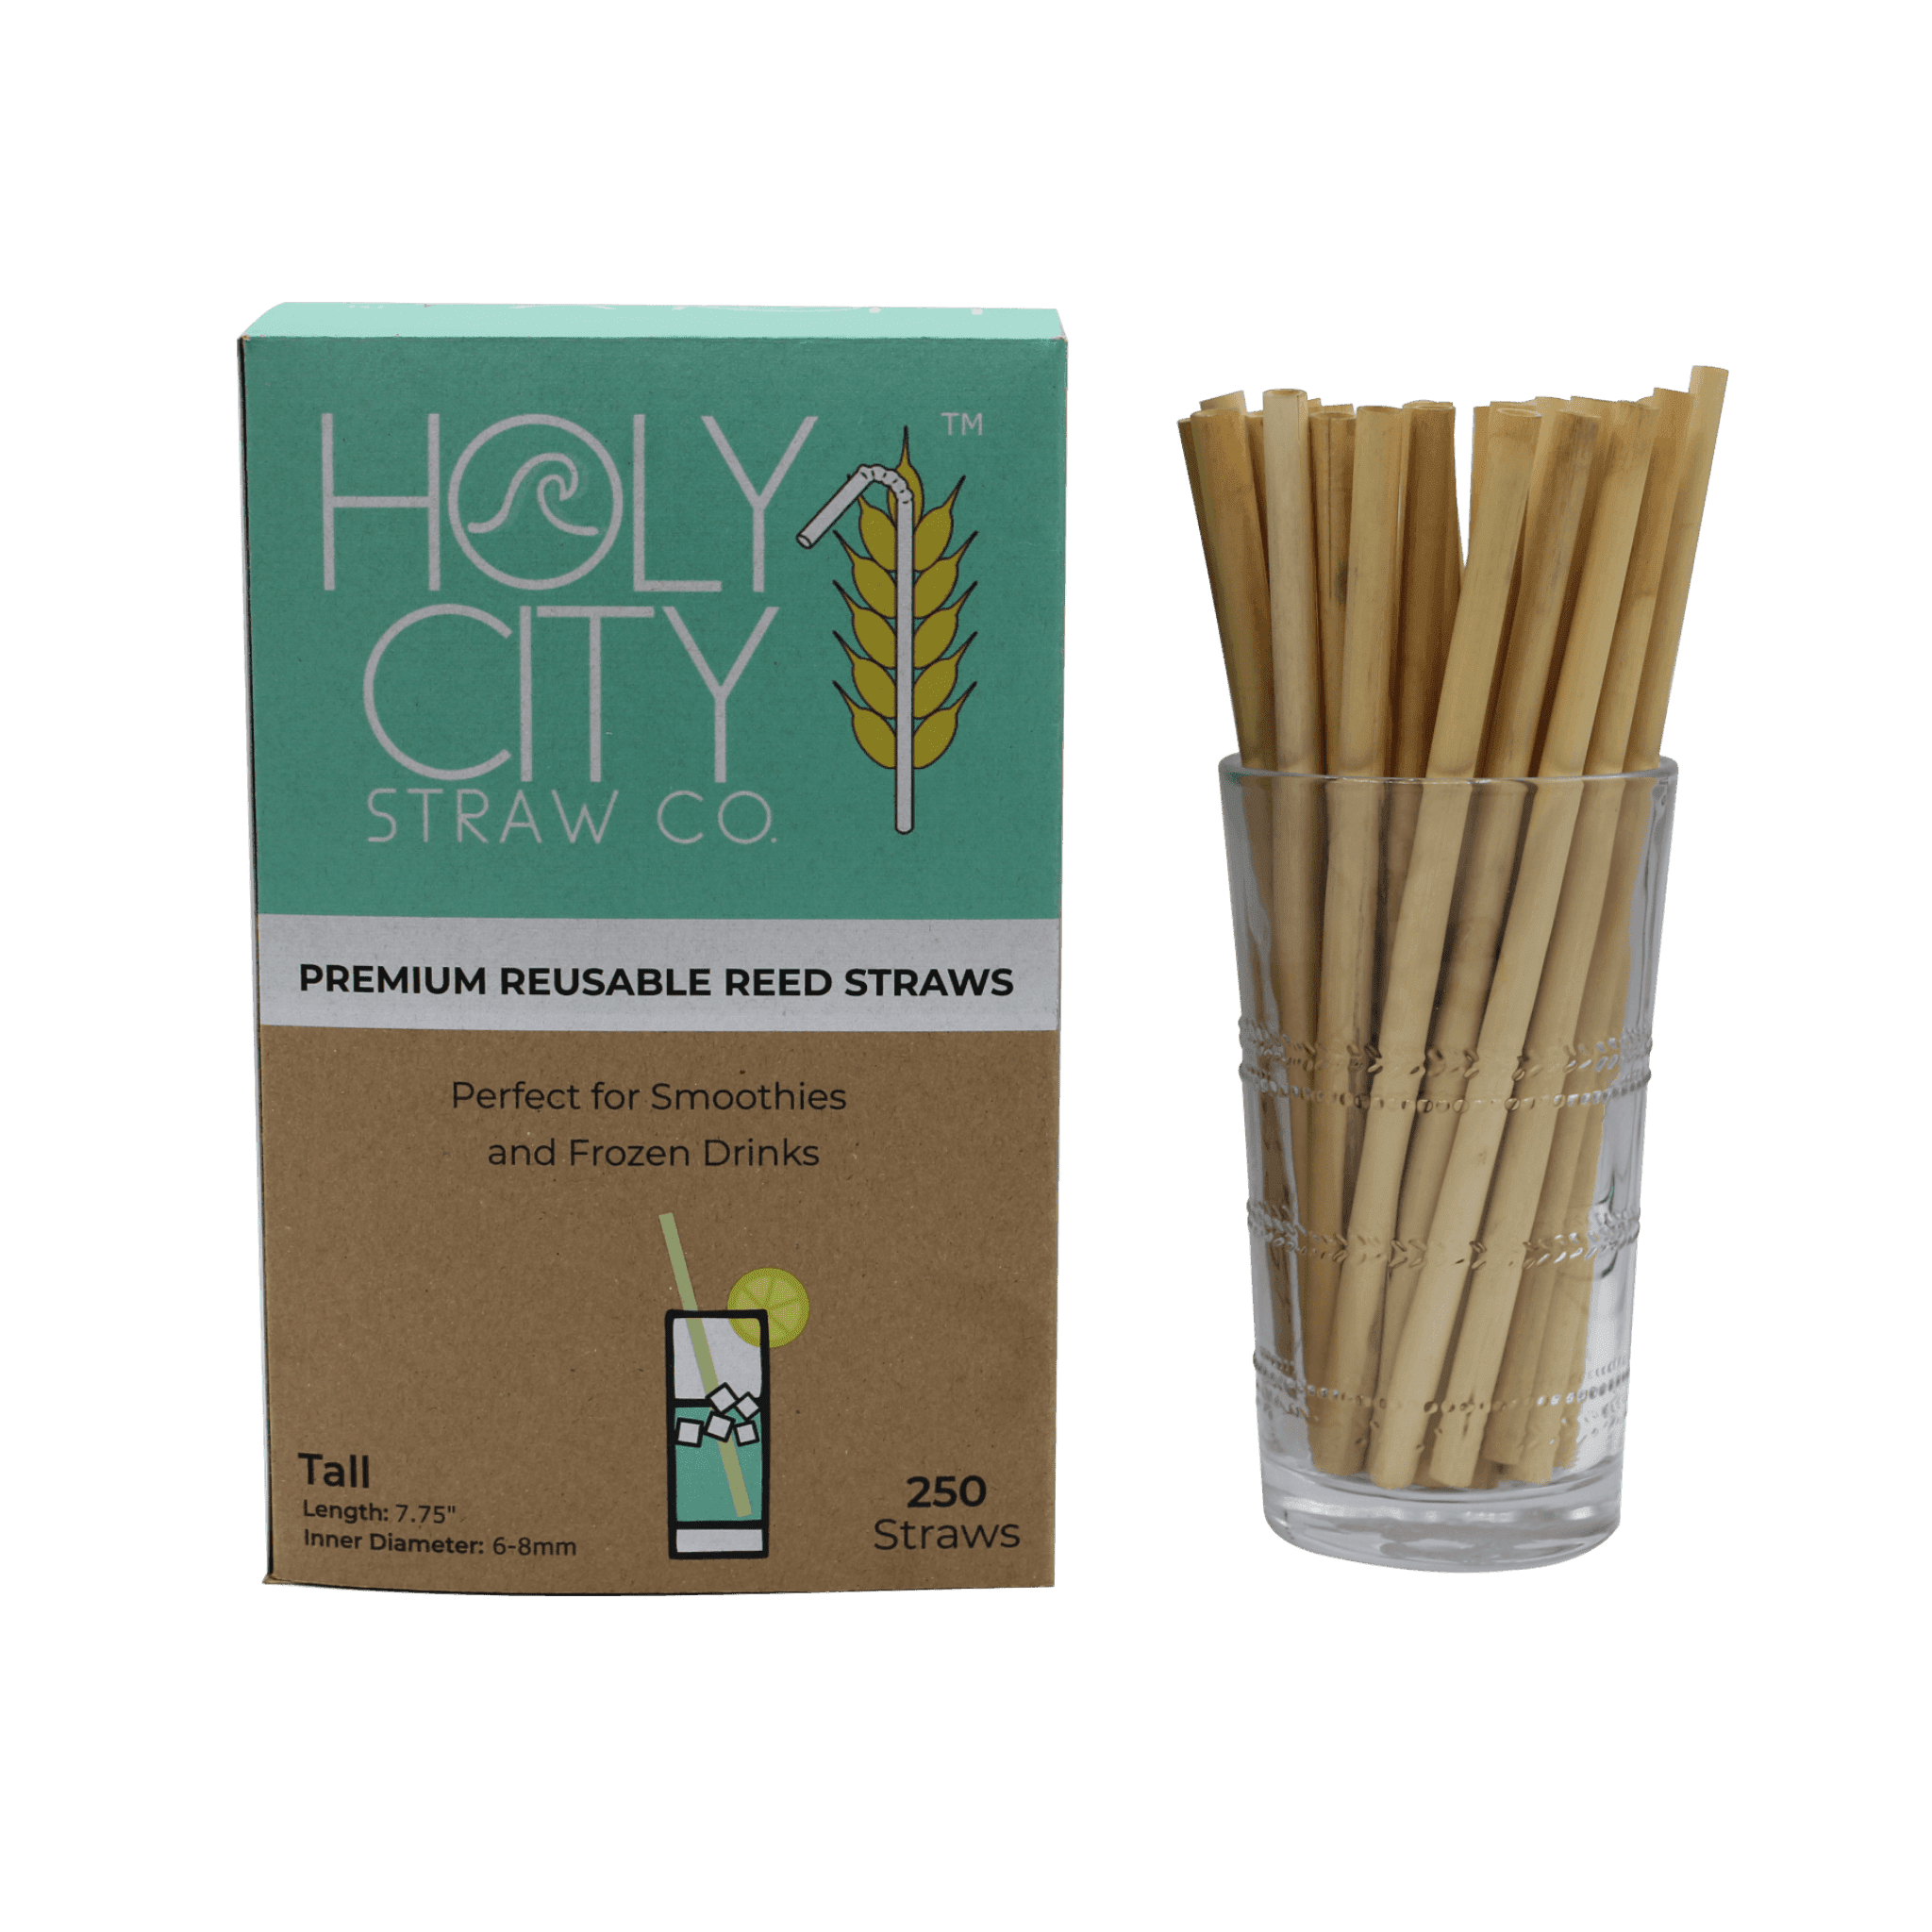 7.9" Jumbo Reed Straws by Holy City Straw Company